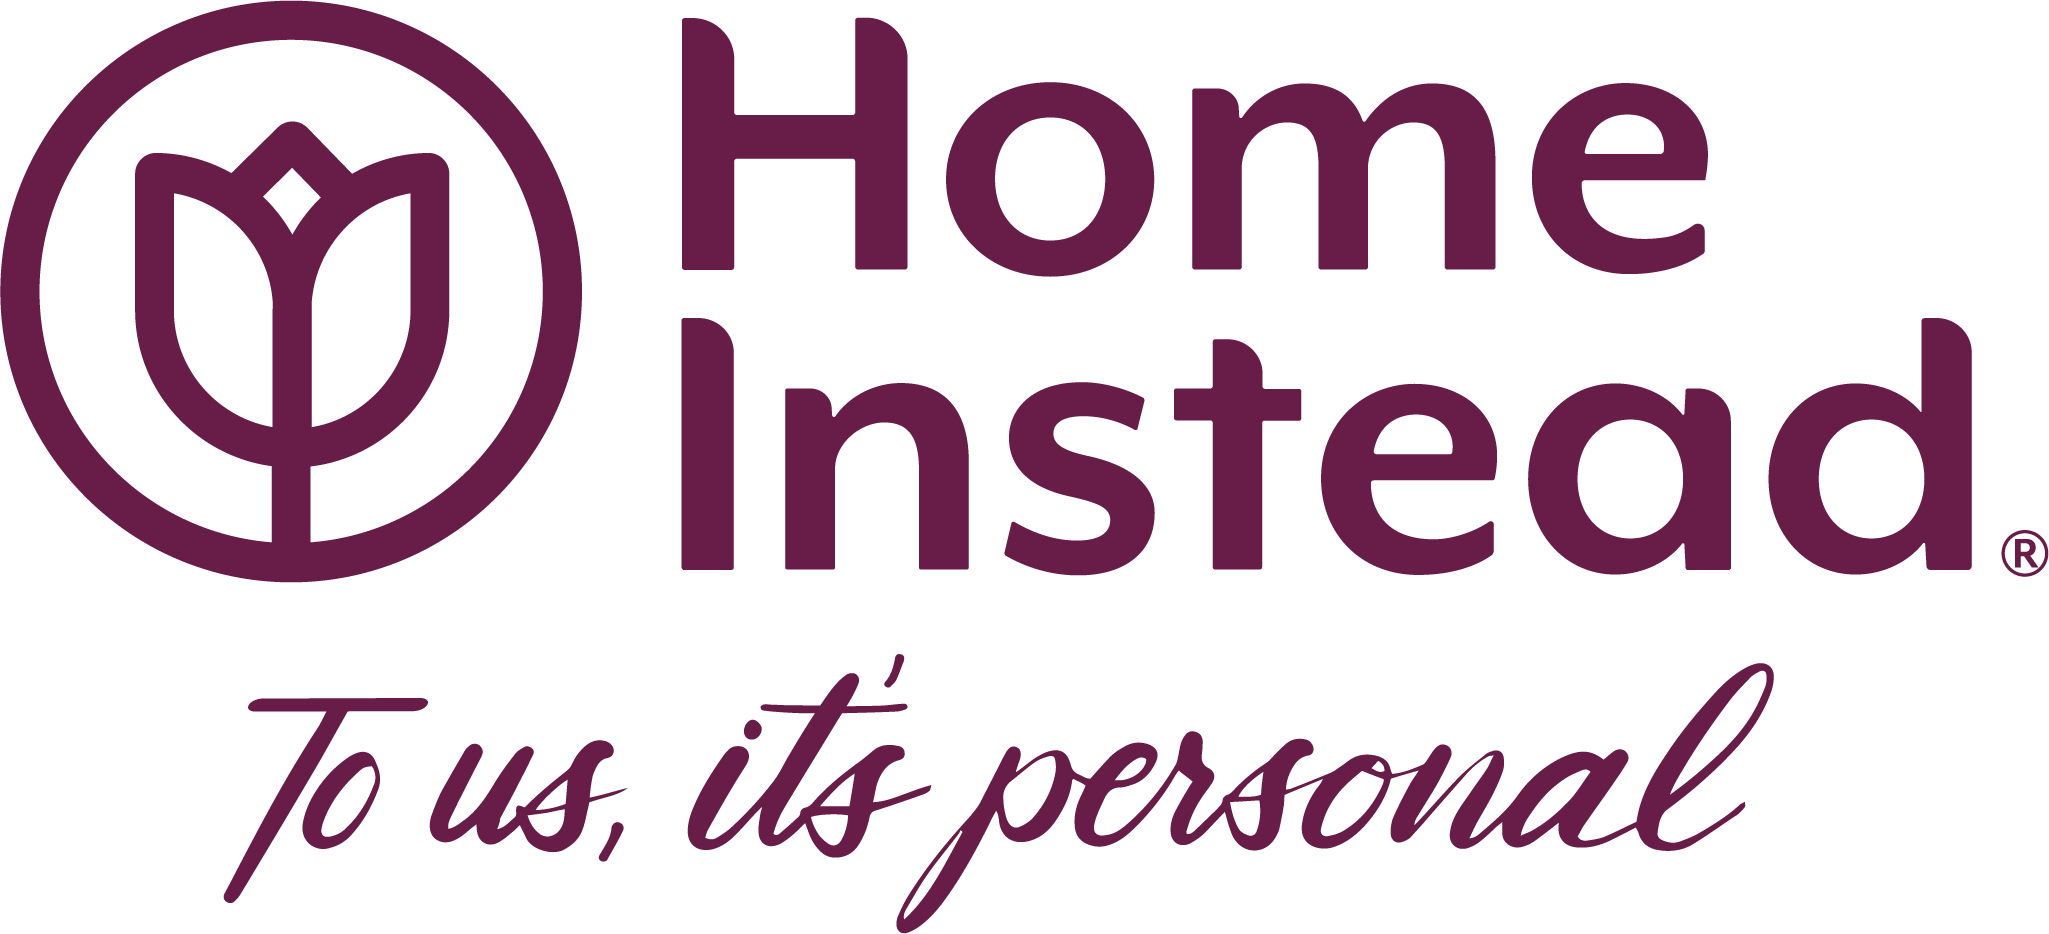 Home Instead - St. Paul logo